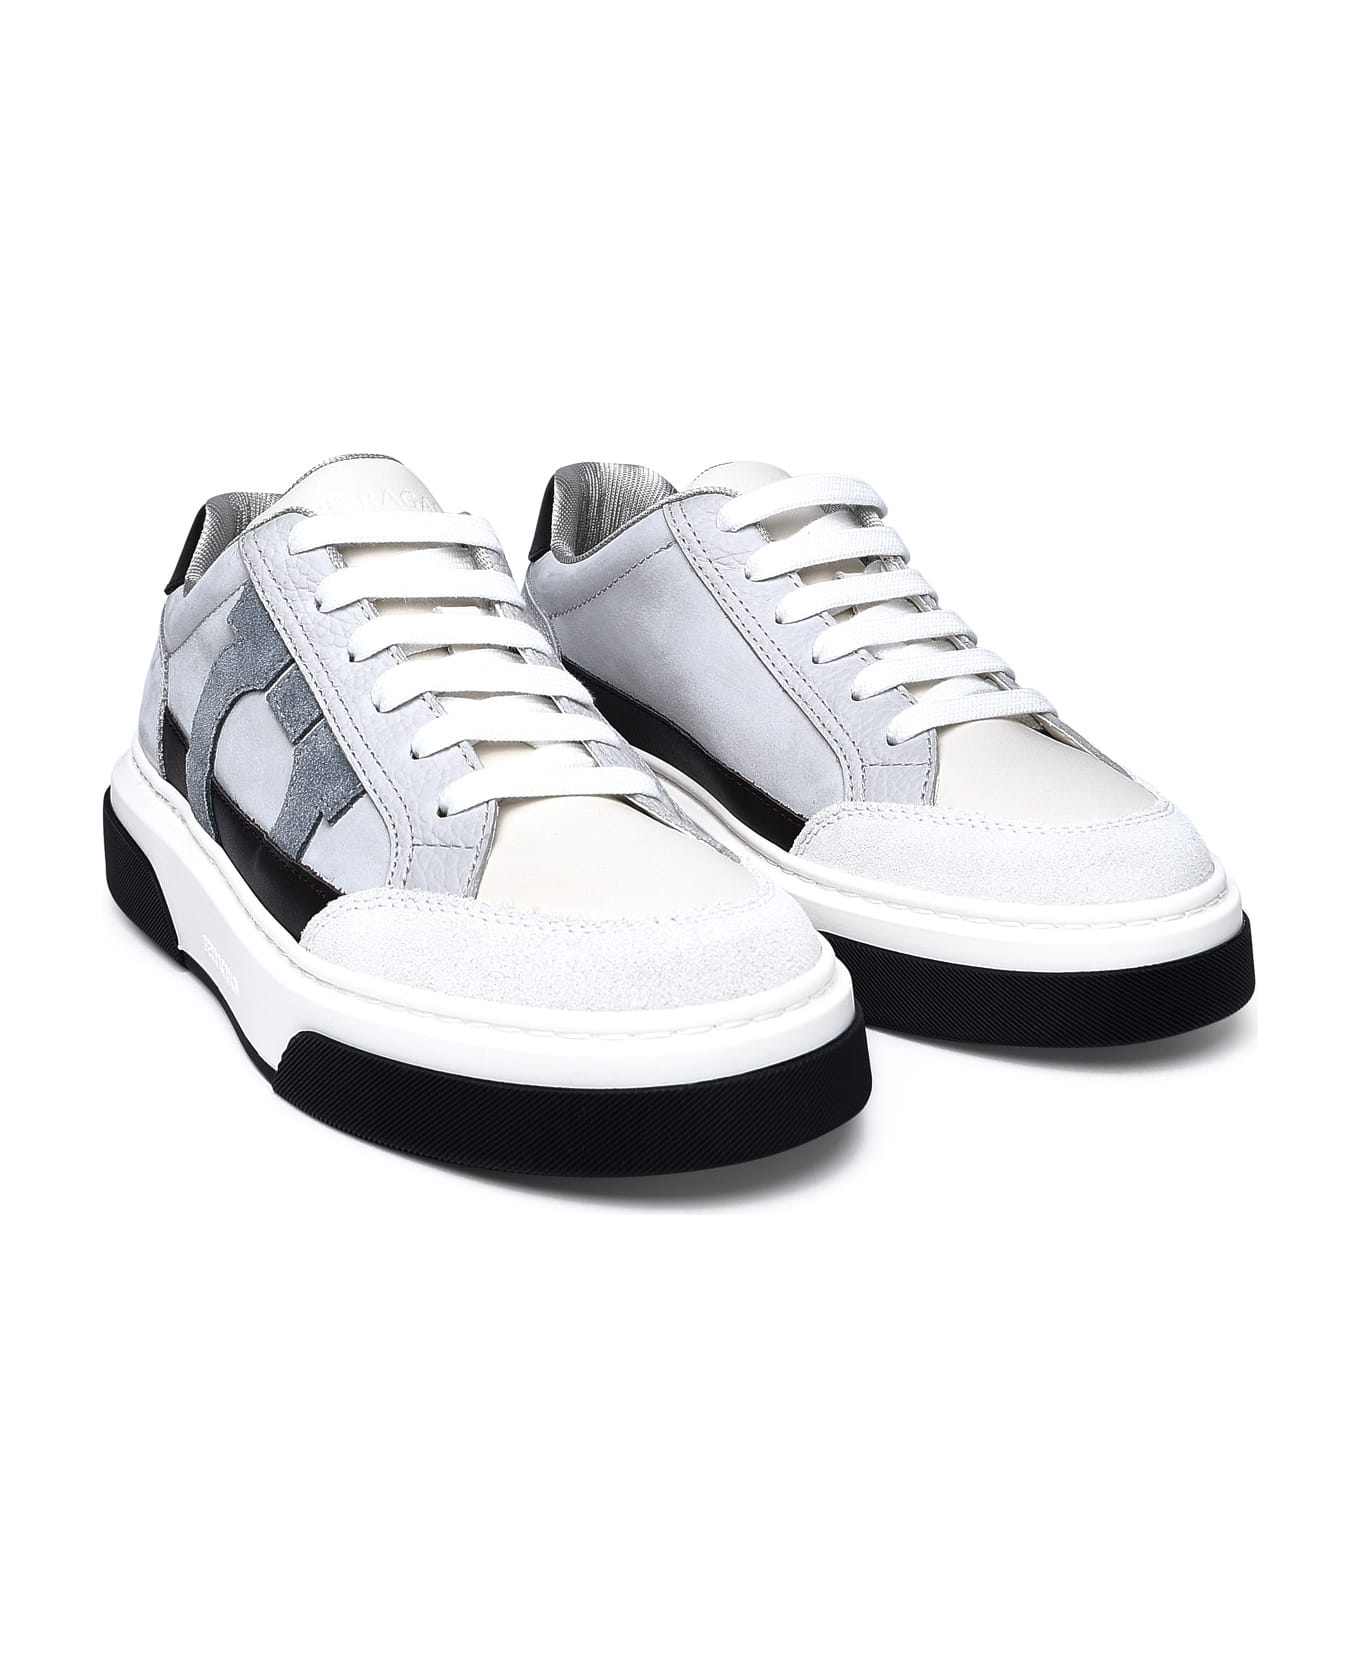 Ferragamo Multicolor Nappa Leather Sneakers - Grey